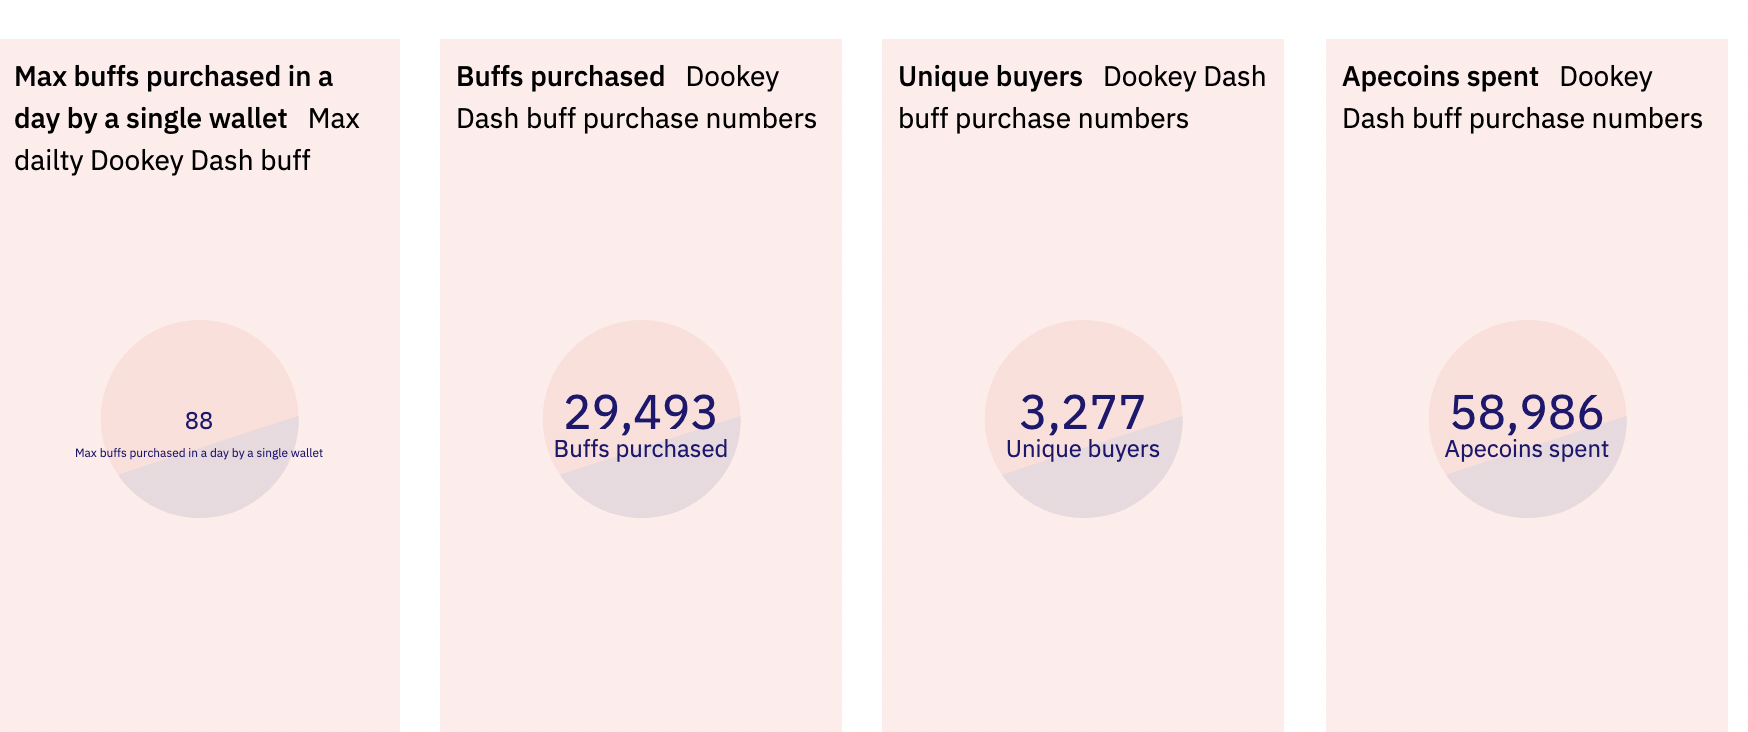 BAYC铸造型游戏Dookey Dash上线以来已获得5.8万枚APE收入